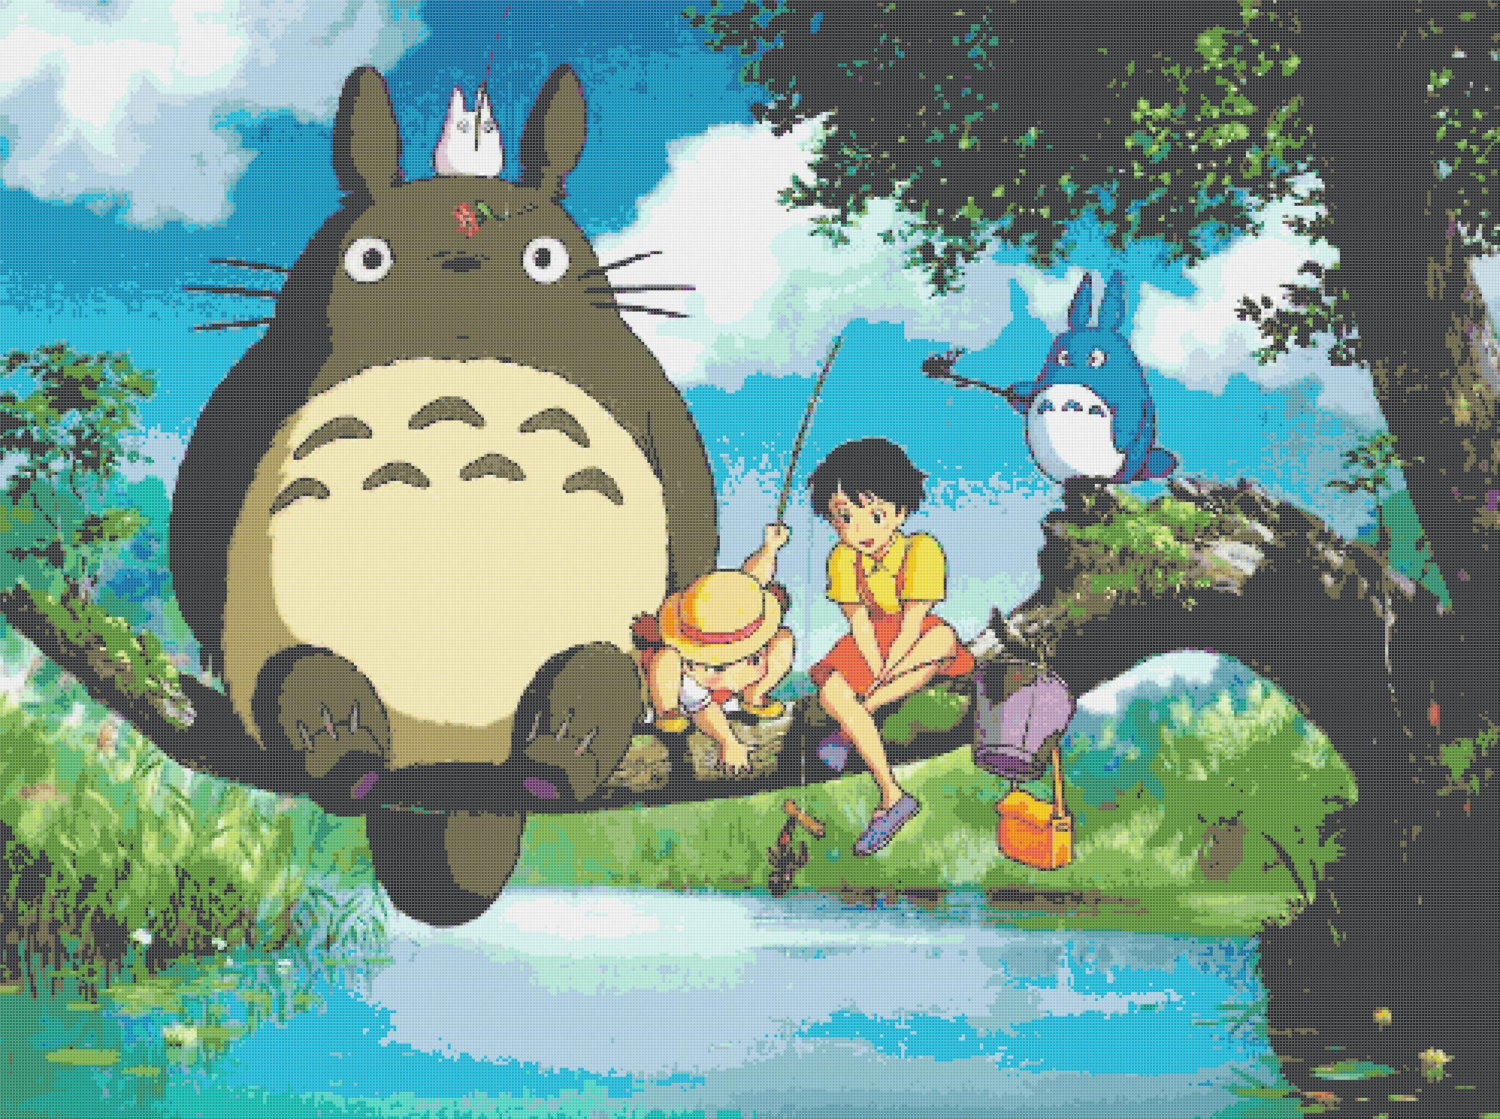 counted Cross stitch pattern Totoro fishing by Miyazaki 496*370 stitches BN268 - $3.99